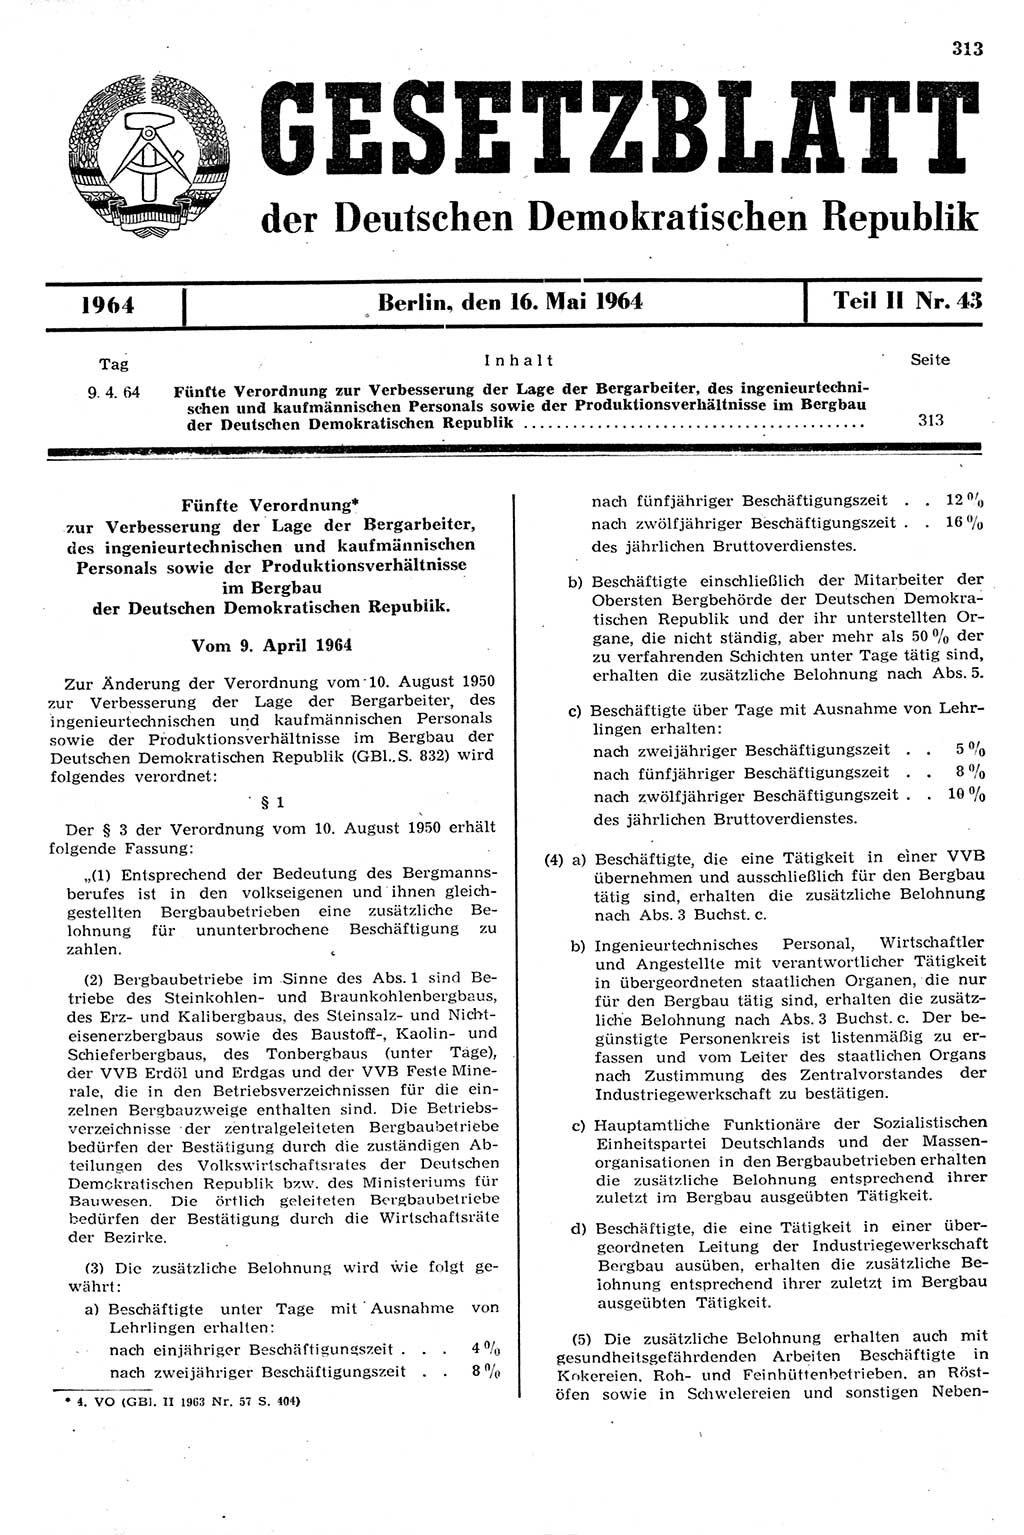 Gesetzblatt (GBl.) der Deutschen Demokratischen Republik (DDR) Teil ⅠⅠ 1964, Seite 313 (GBl. DDR ⅠⅠ 1964, S. 313)